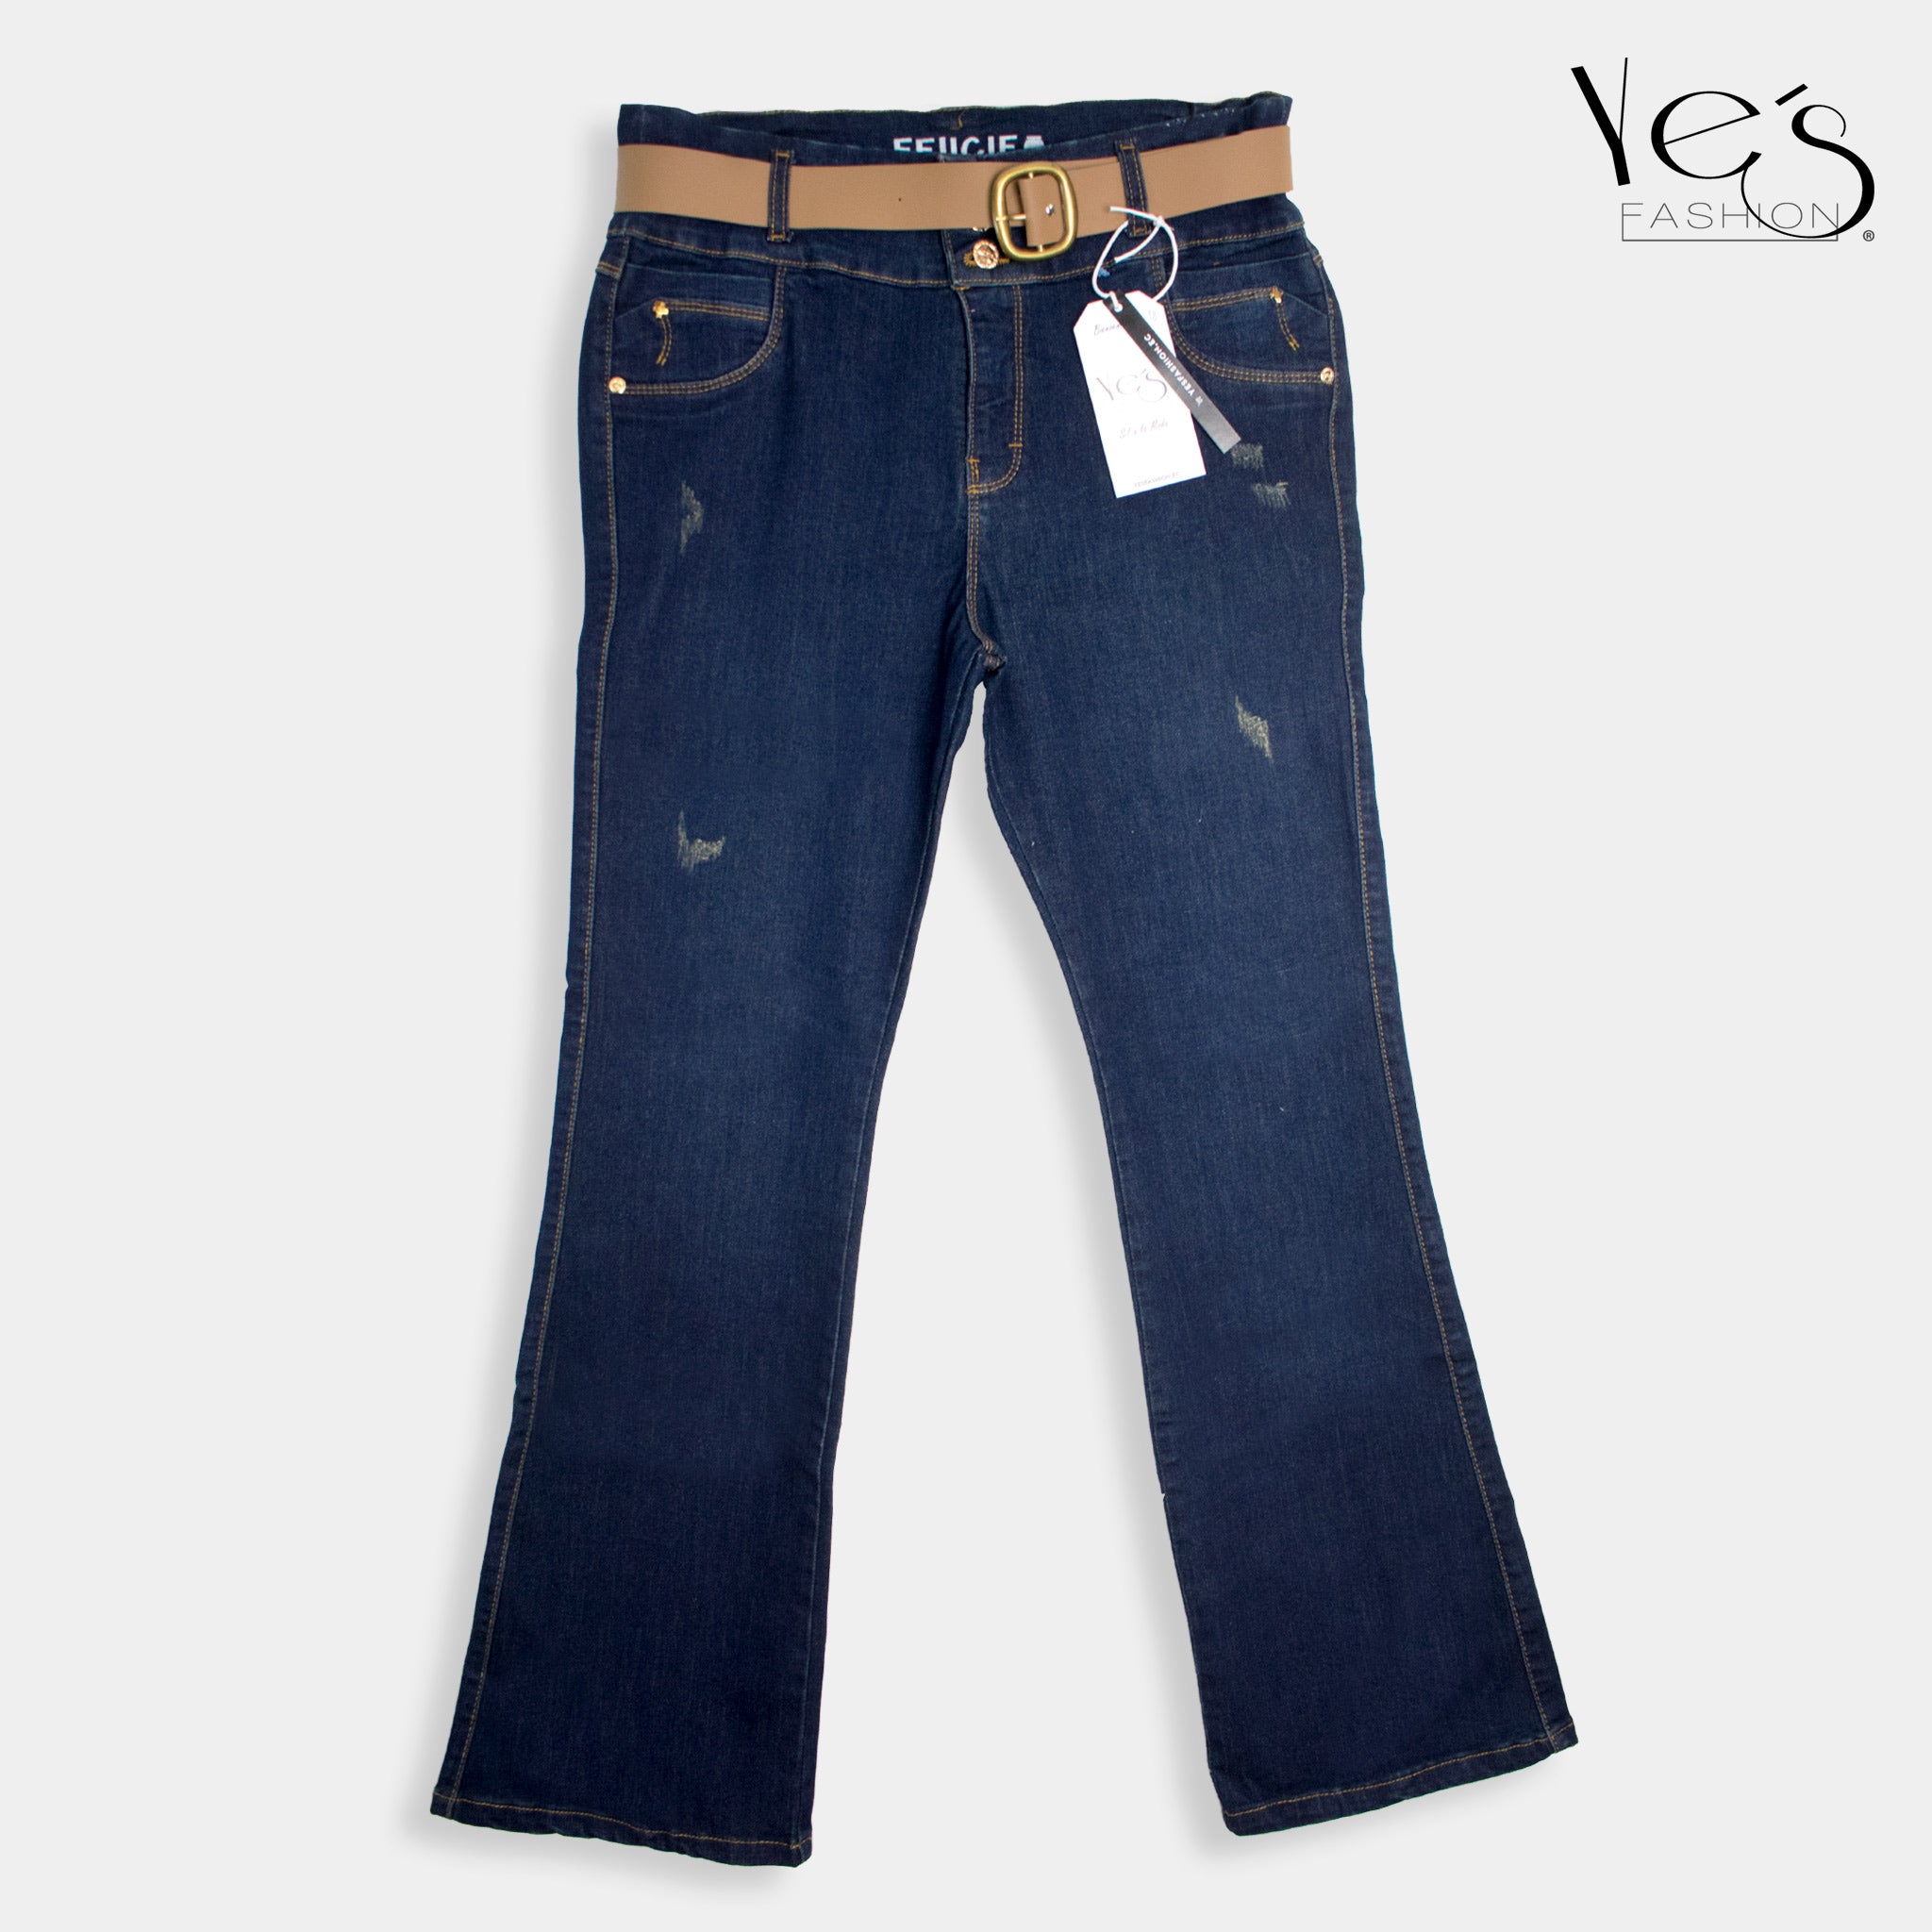 Jeans Acampanados Plus Size - Estilo Moderno con Basta Acampanada - (Color: Indigo )